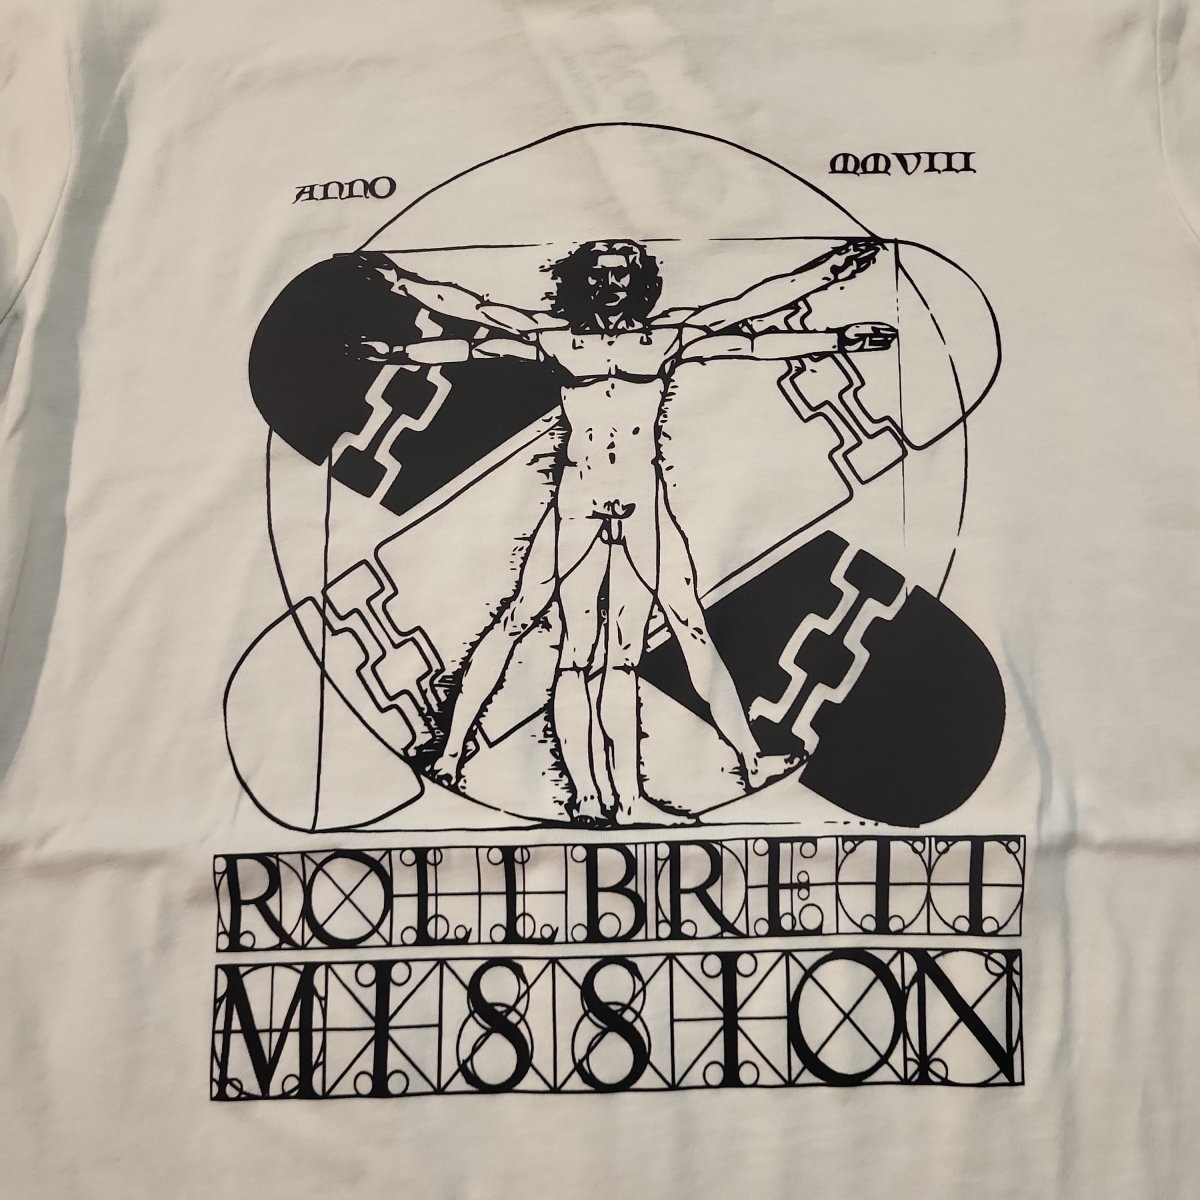 Rollbrett Mission Vitruvian Organic LADIES T-Shirt weiß - Shirts & Tops - Rollbrett Mission